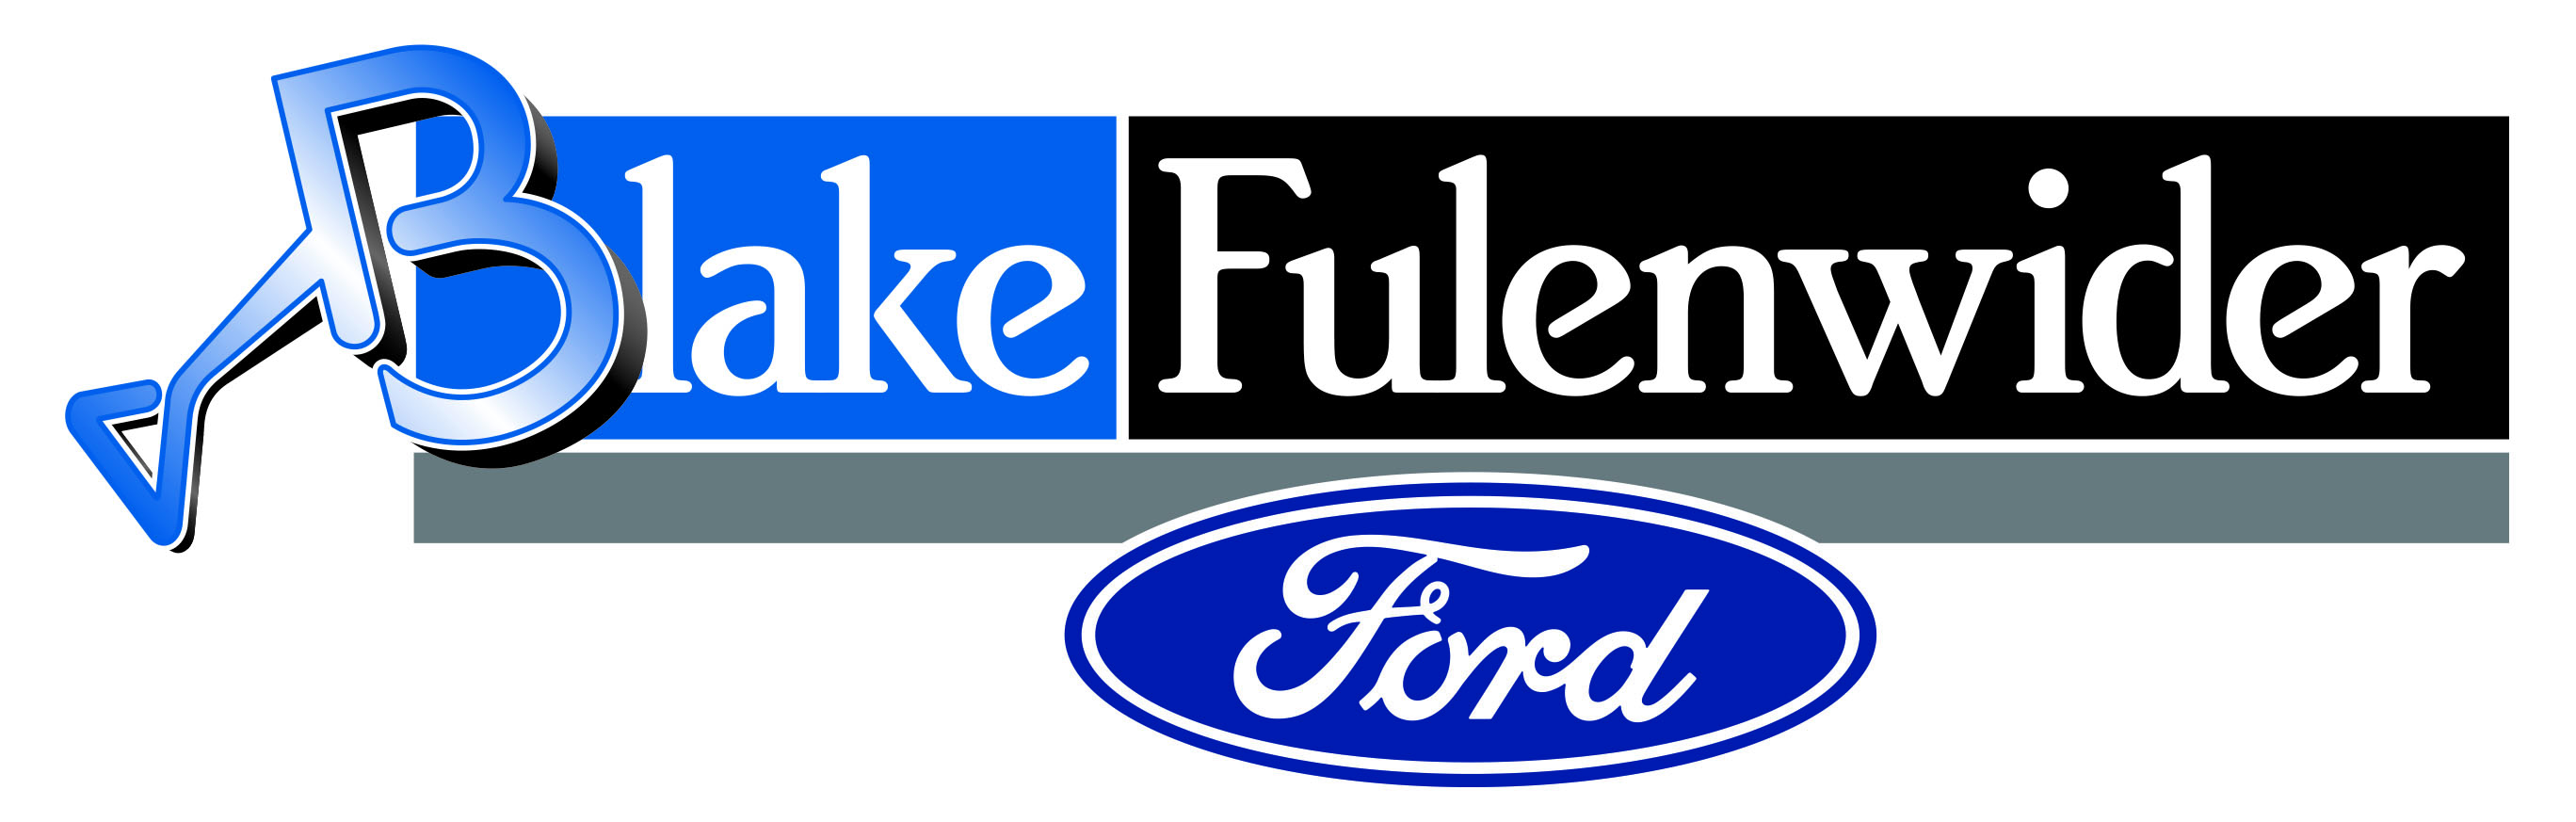 Blake Fulenwider Ford